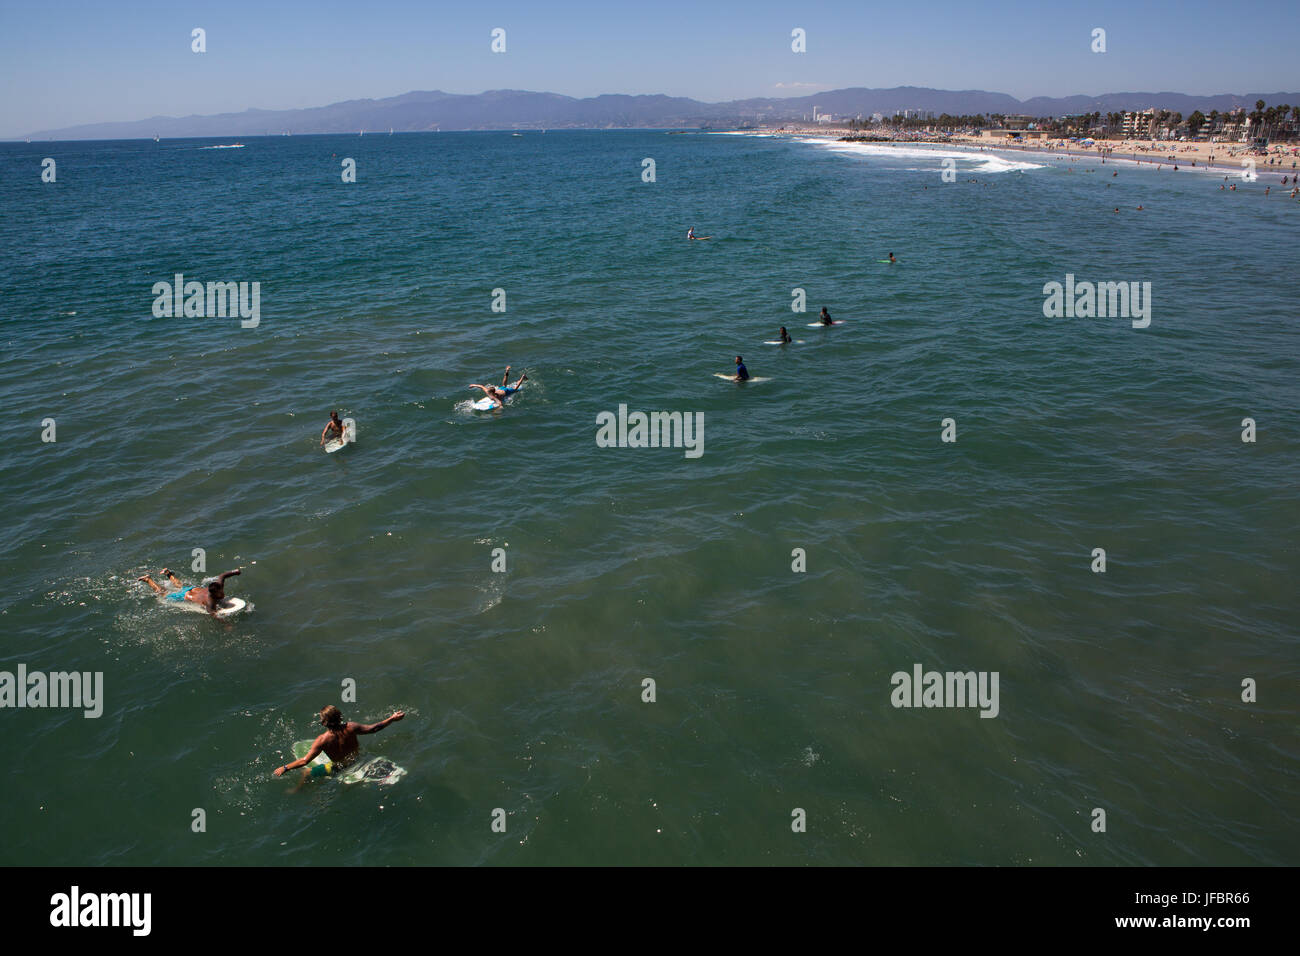 Am Venice Beach, mehrere Surfer Paddel aus und für die nächste Welle warten. Stockfoto